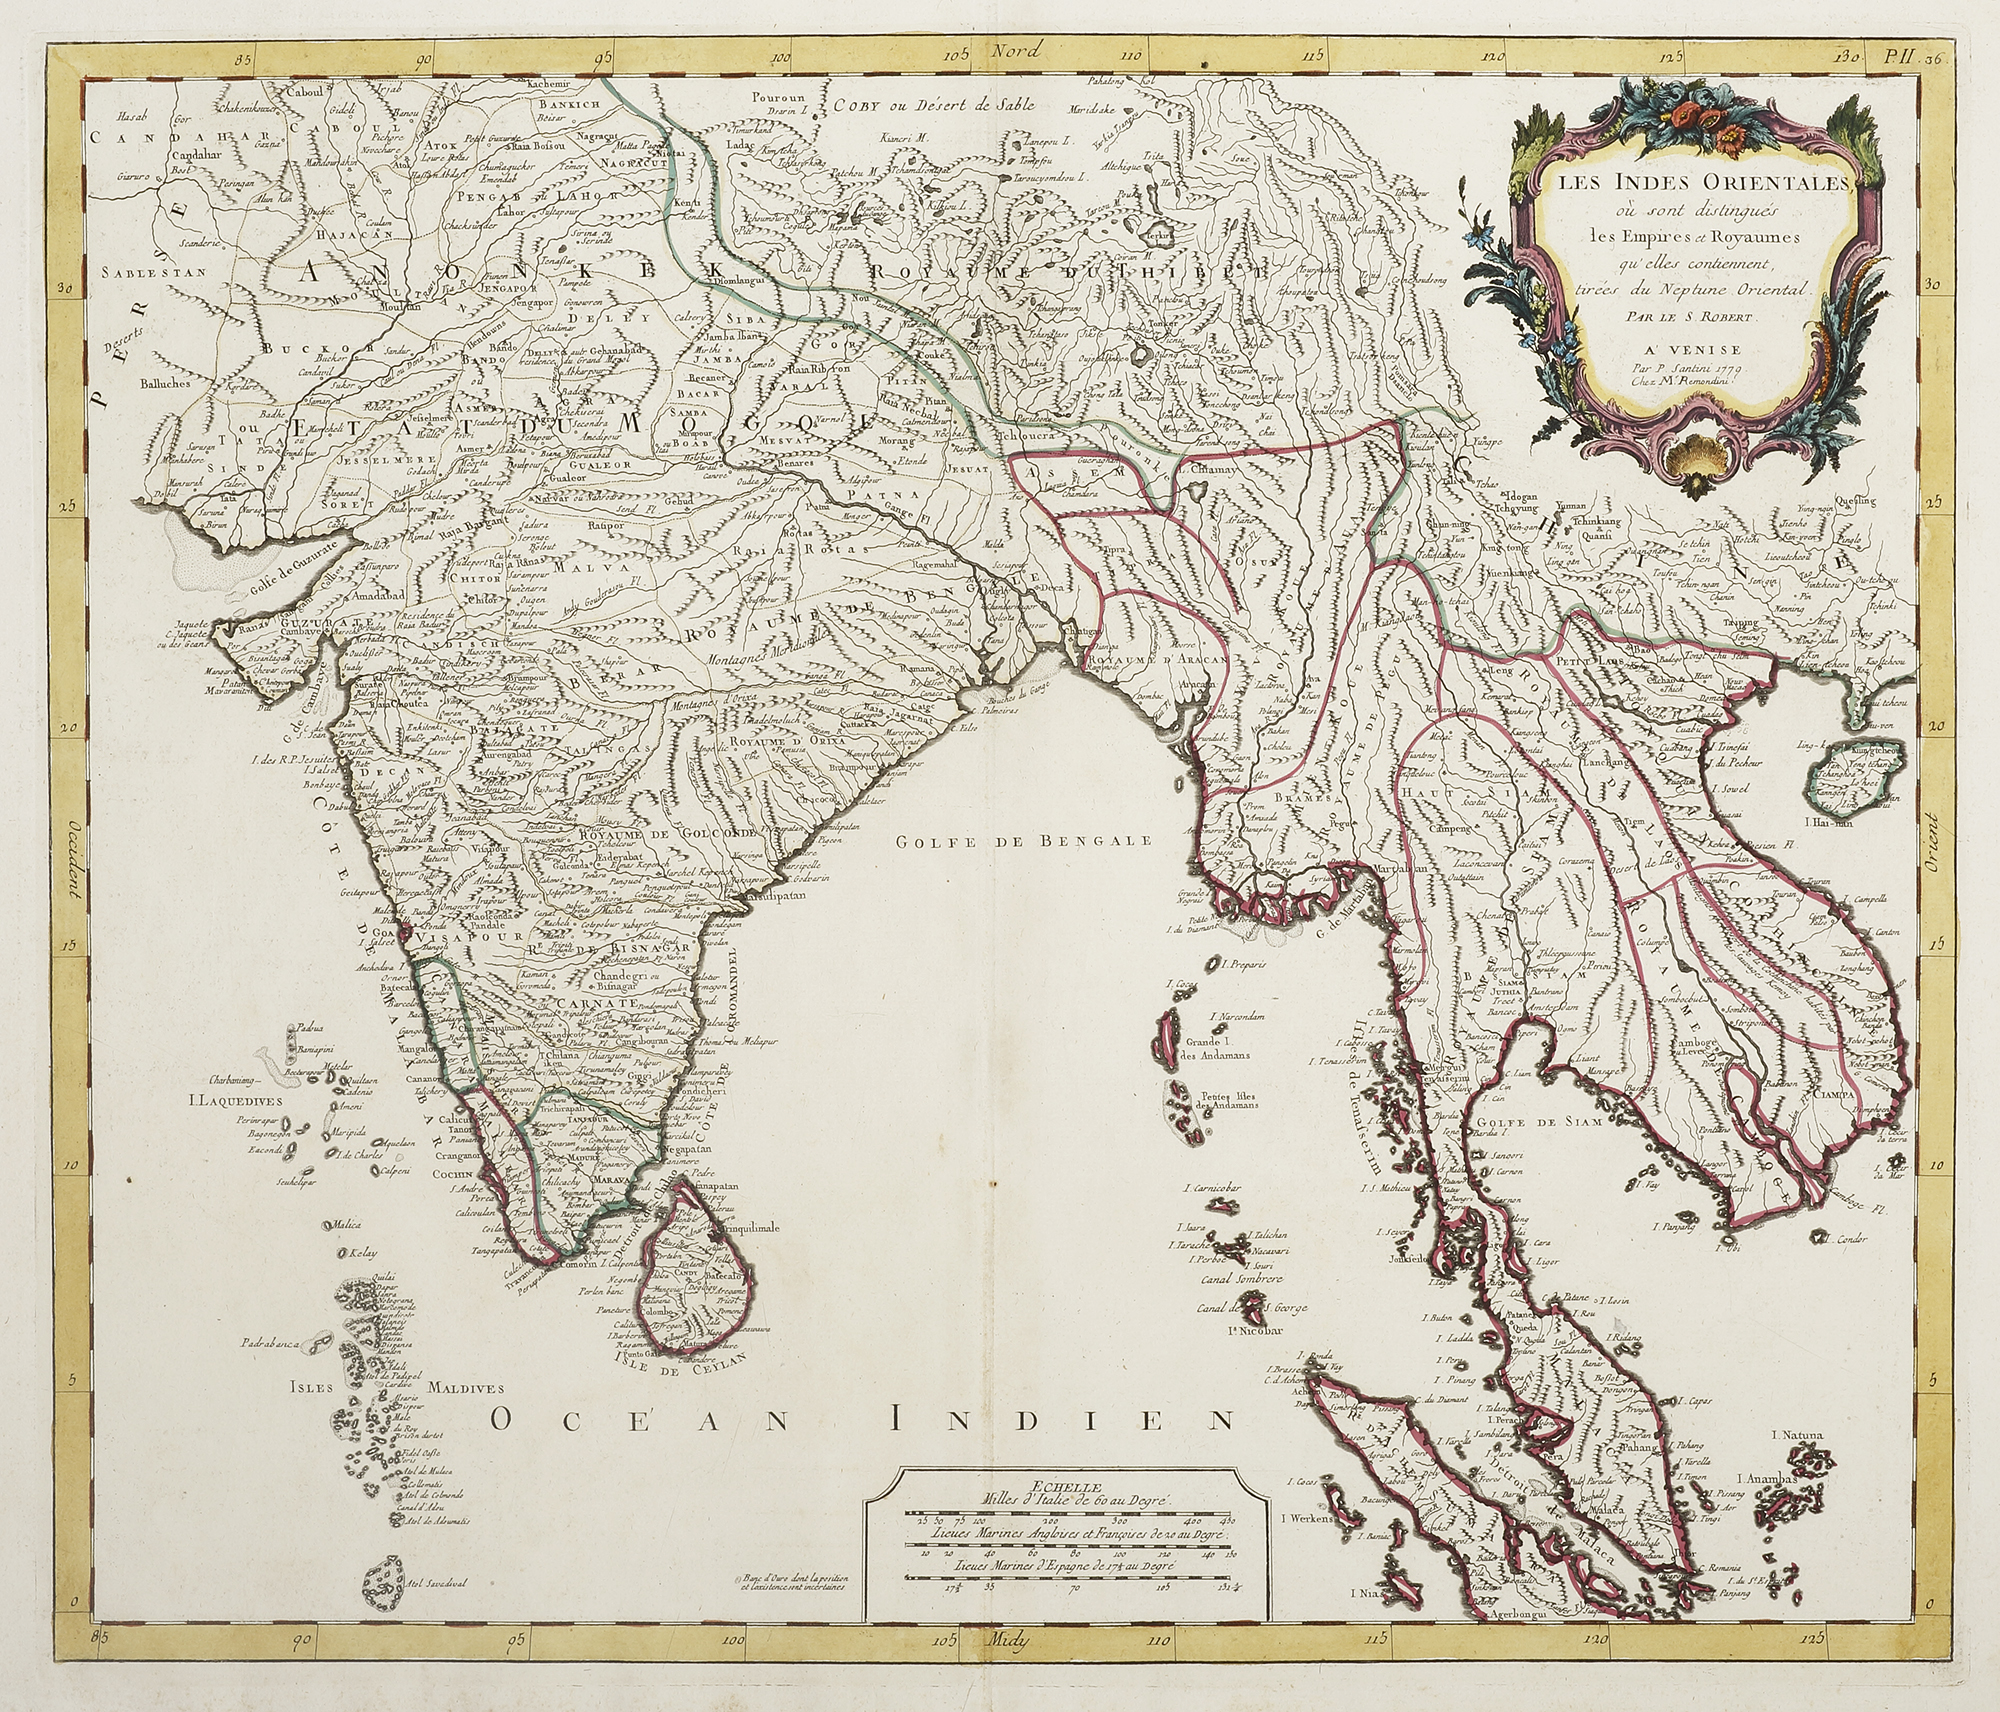 Les Indes Orientales, ou sont distingues les Empires et Royaumes qu'elles contiennent, tirees du Neptune Oriental. - Antique Map from 1779